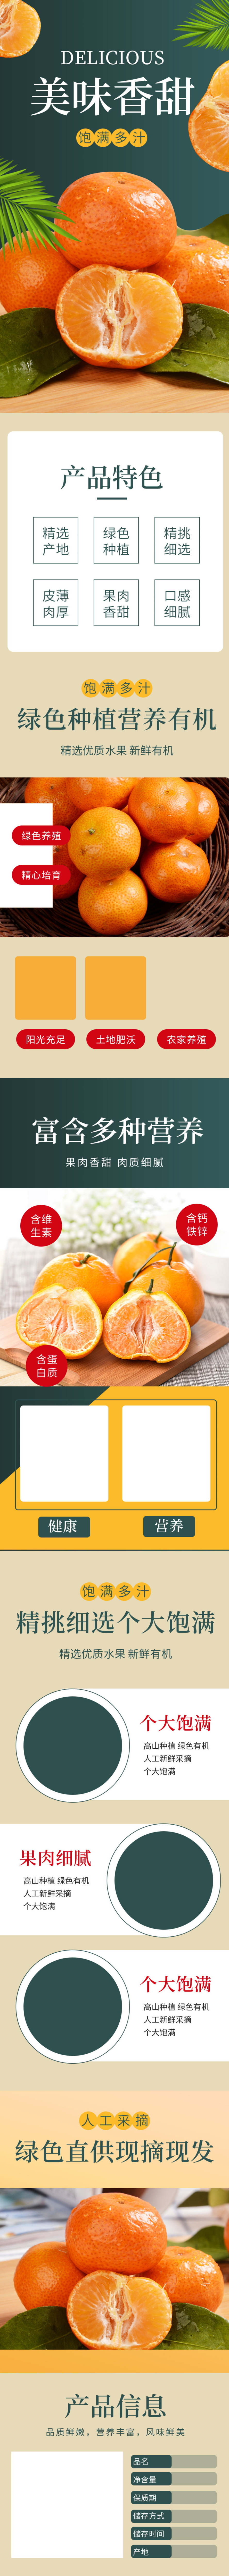 海报水果橘子丑橘详情立即下载电商水果砂糖橘子桔子橙子脐橙详情立即